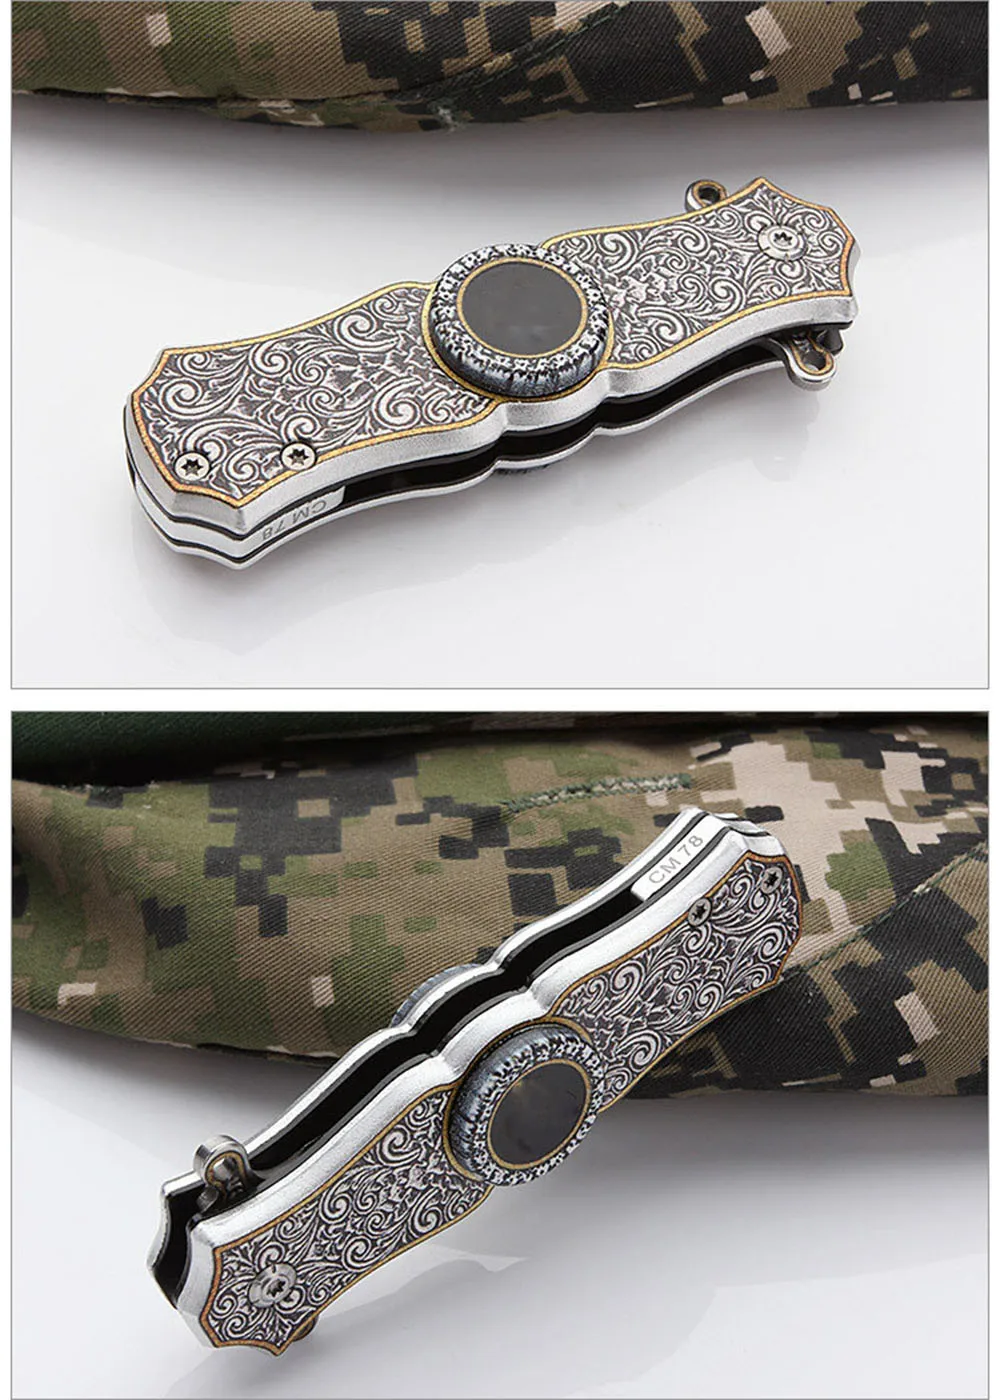 Сова OD142 3D крутой наконечник гироскопа складной нож походные ножи выживания Мульти нож карманный тактический нож